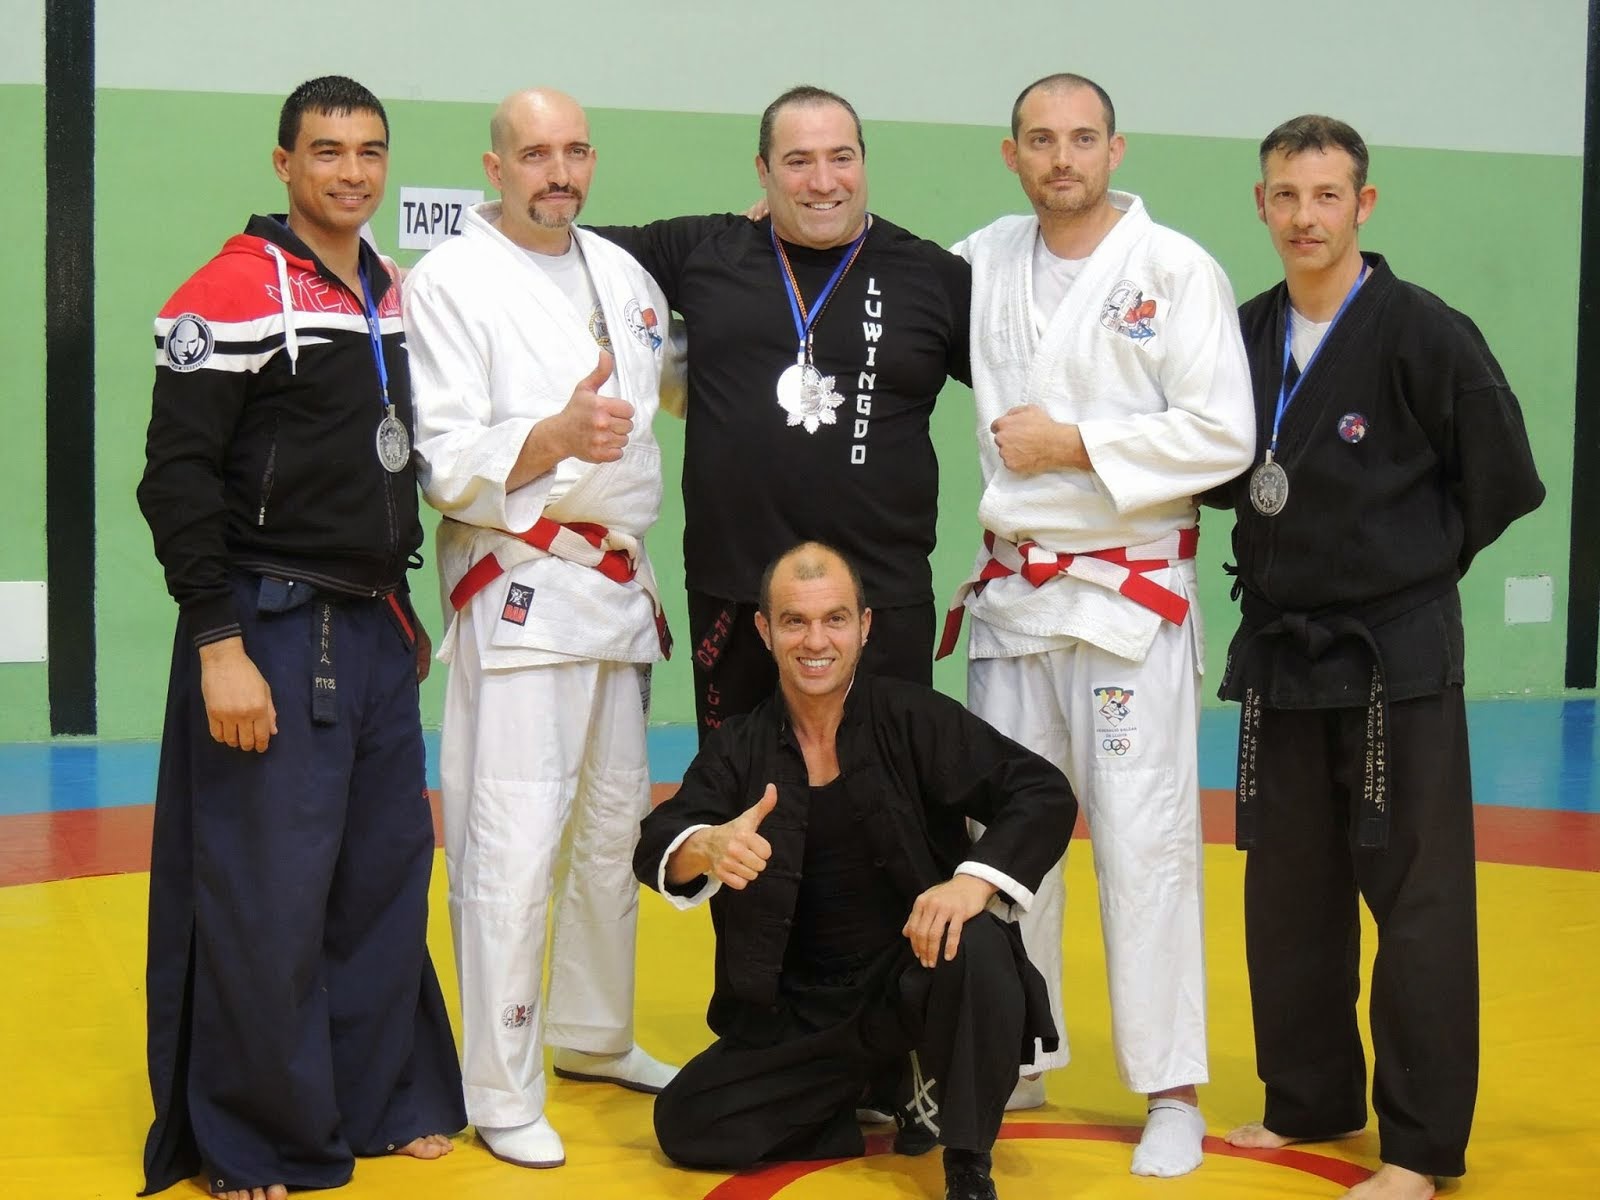 Encuentro de artes marciales organización hermanos y Maestros Acevedo.Mallorca 2015